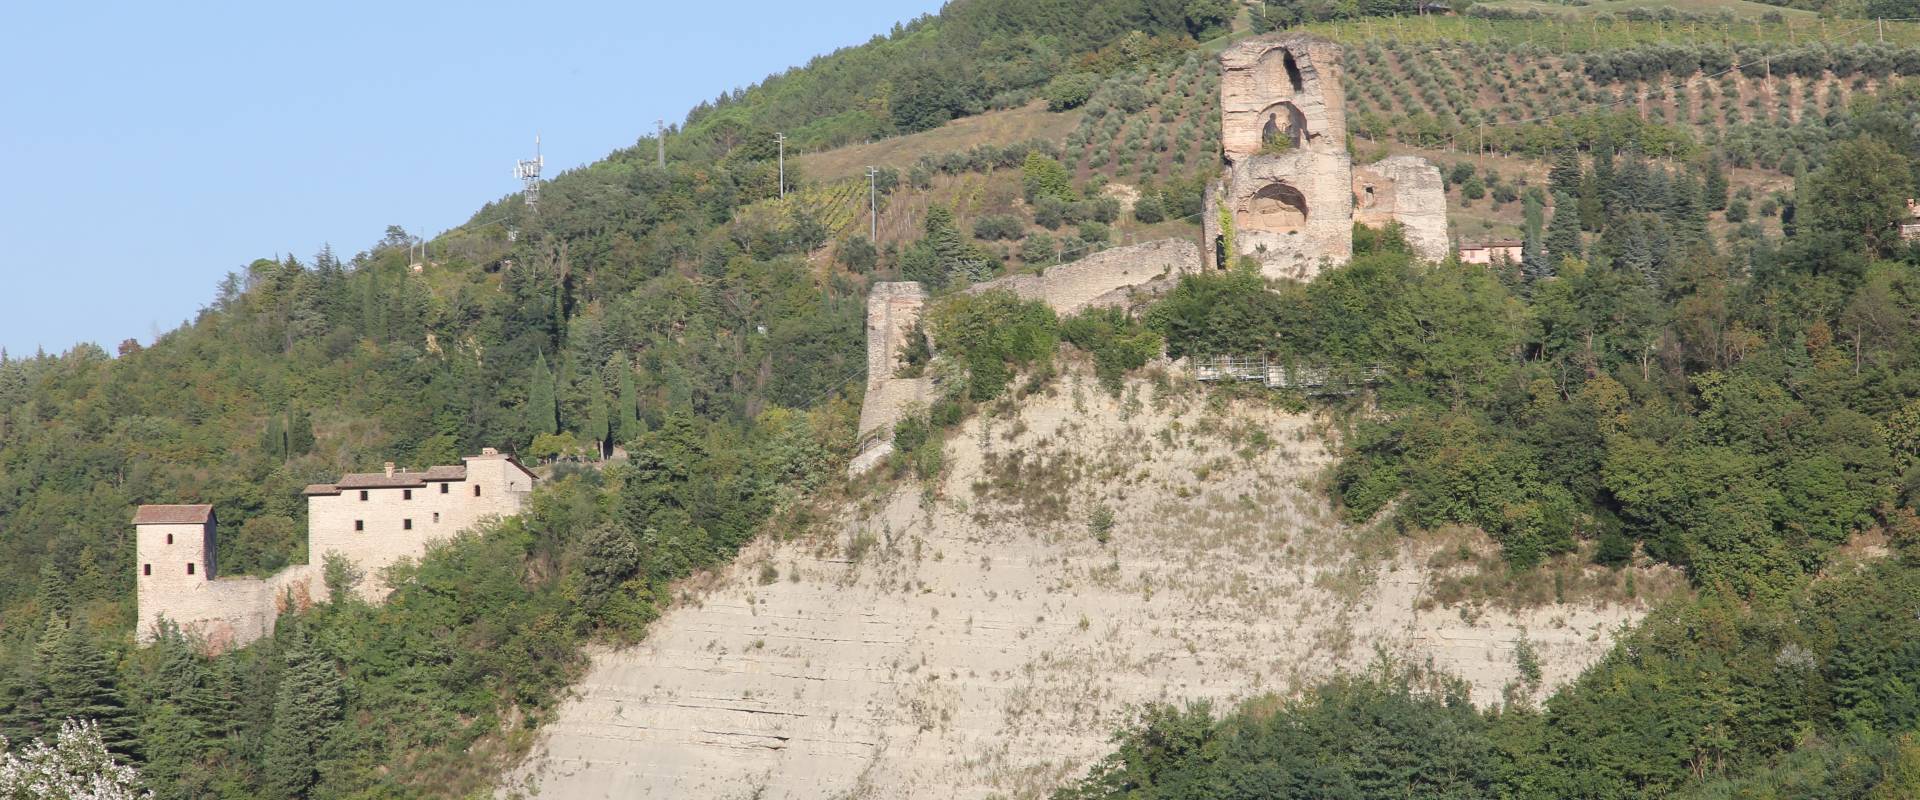 Modigliana, rocca dei Conti Guidi (04) foto di Gianni Careddu